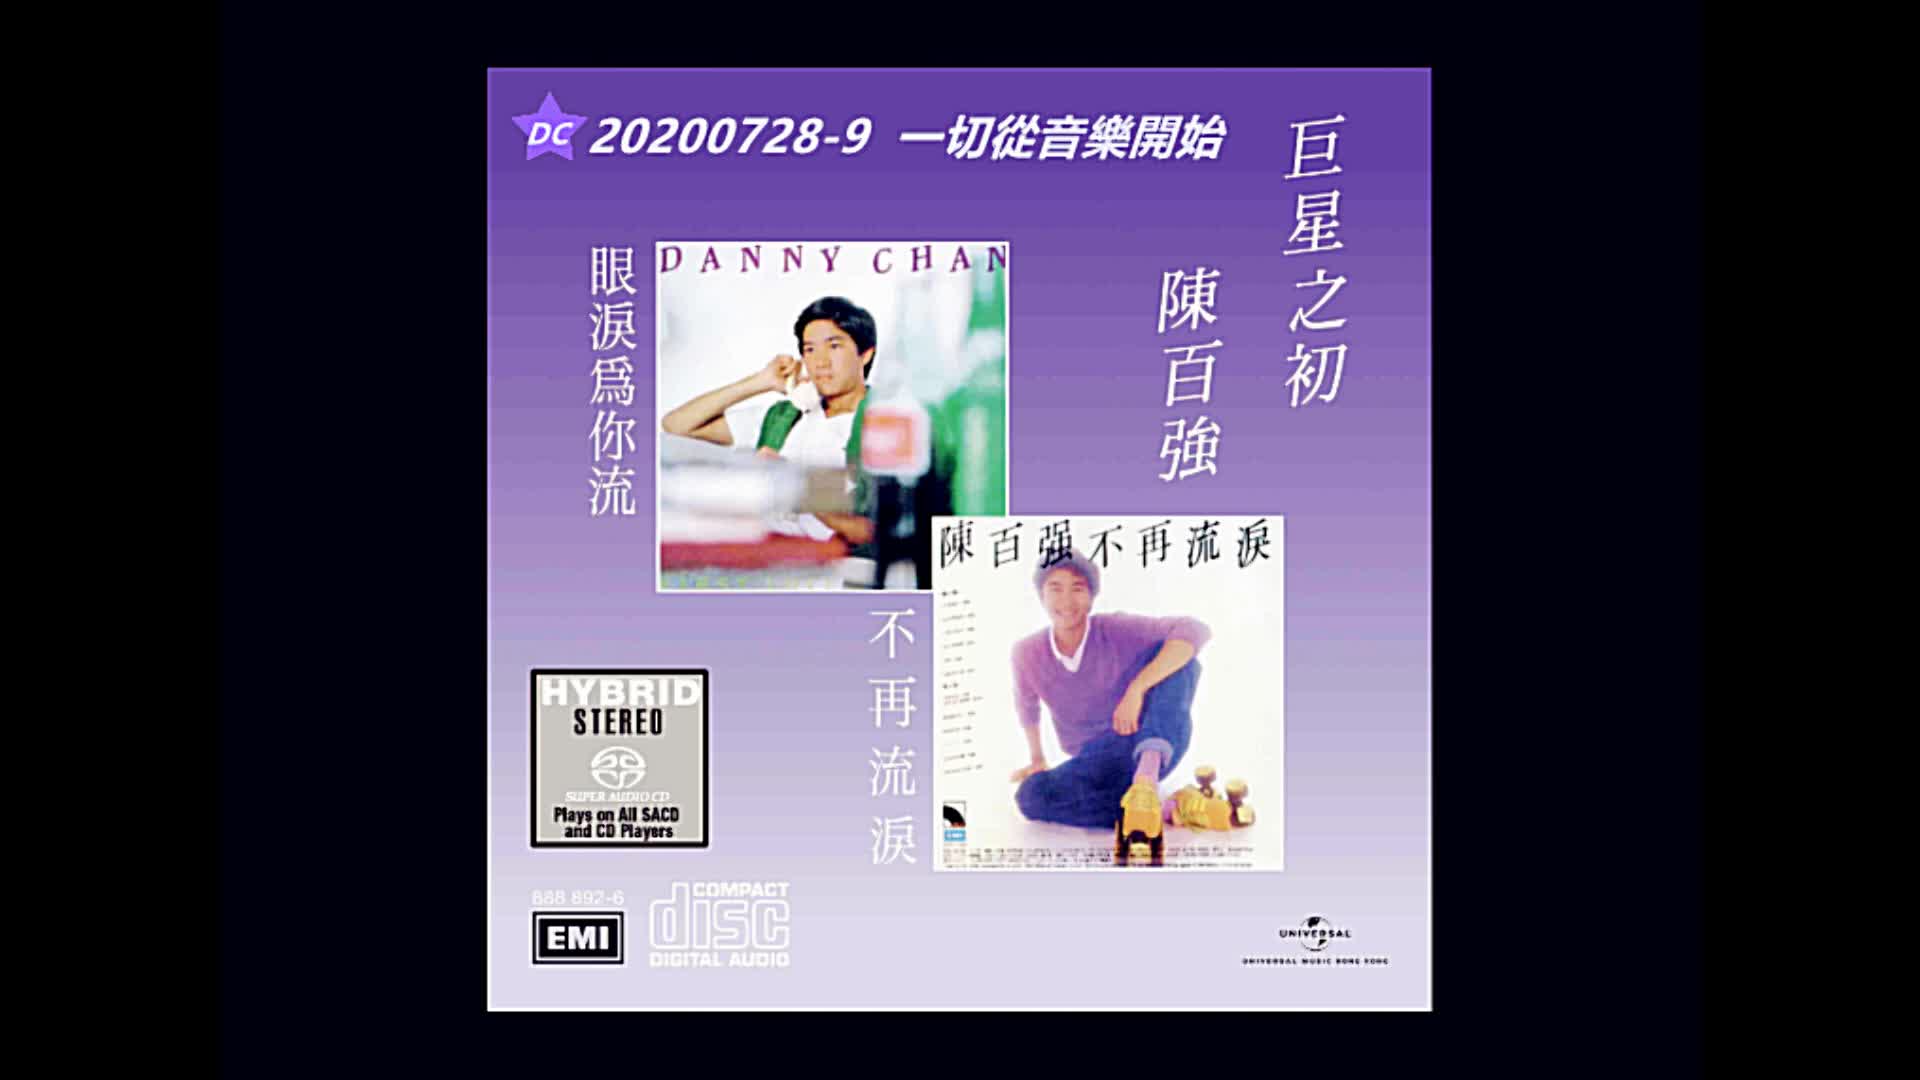 黑胶唱片系列@陈百强巨星之初1986 (20200728~9 一切从音乐开始)-哔哩哔哩